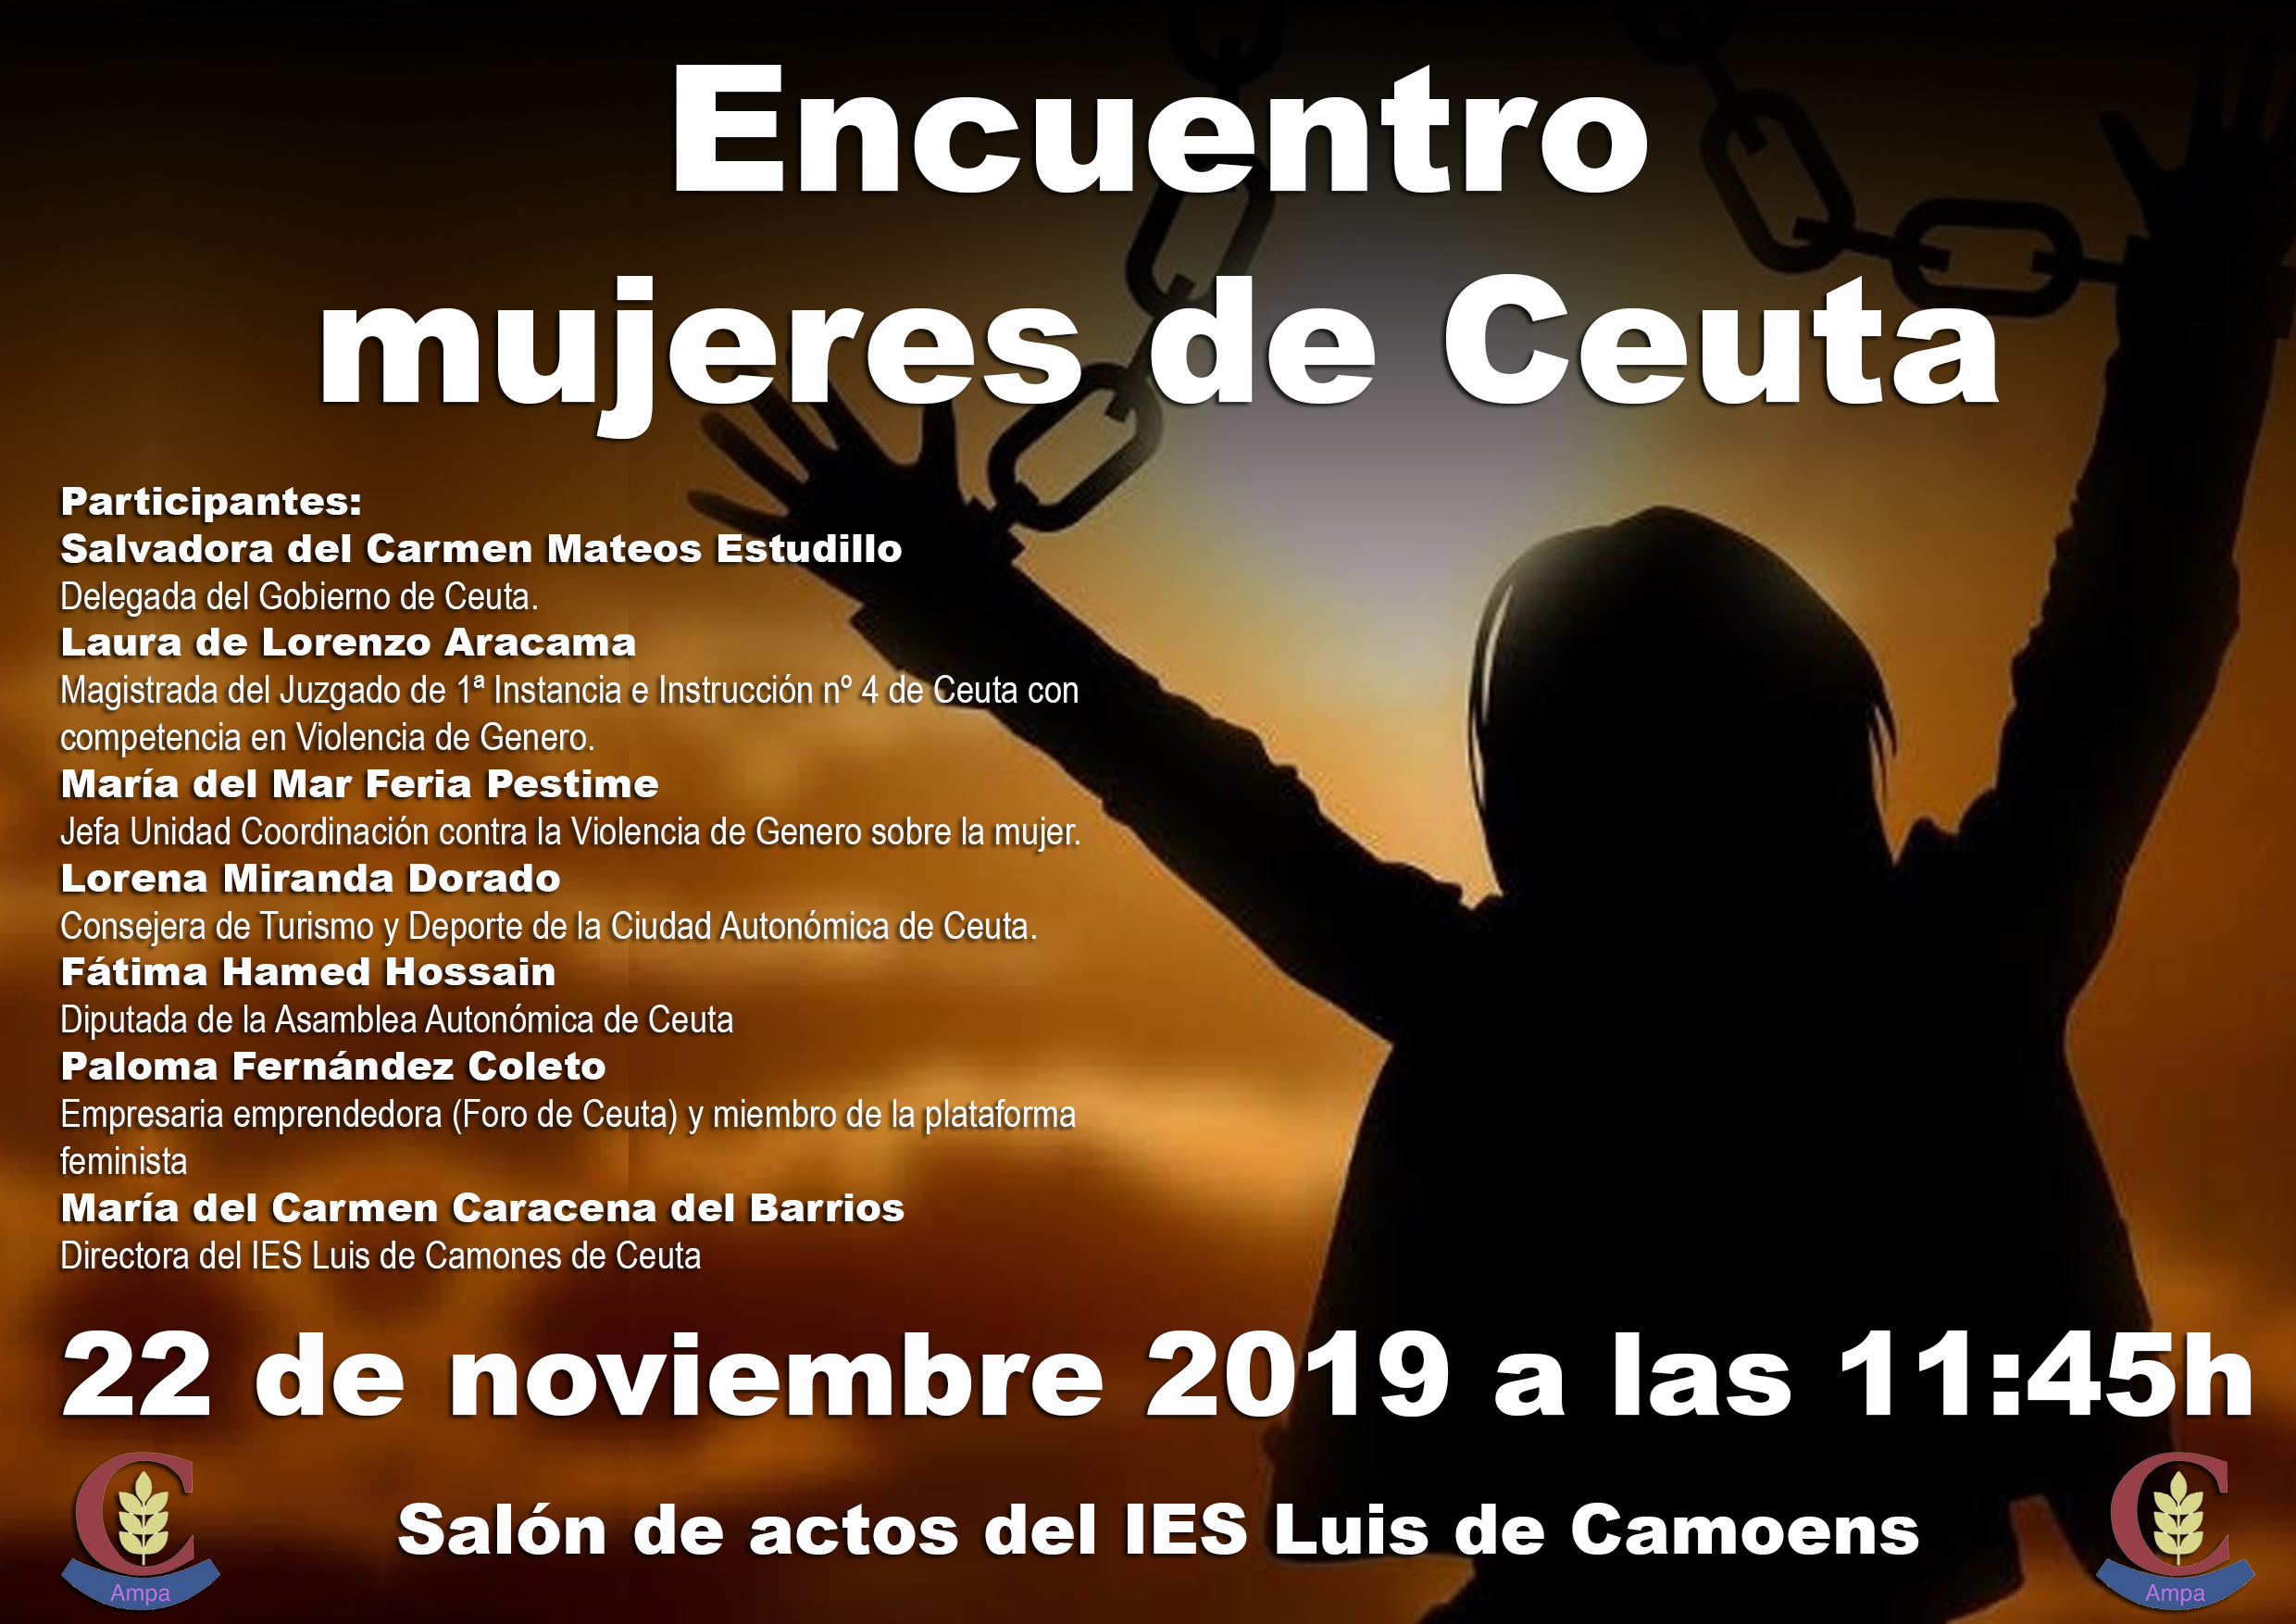 Cartel del Encuentro mujeres de Ceuta